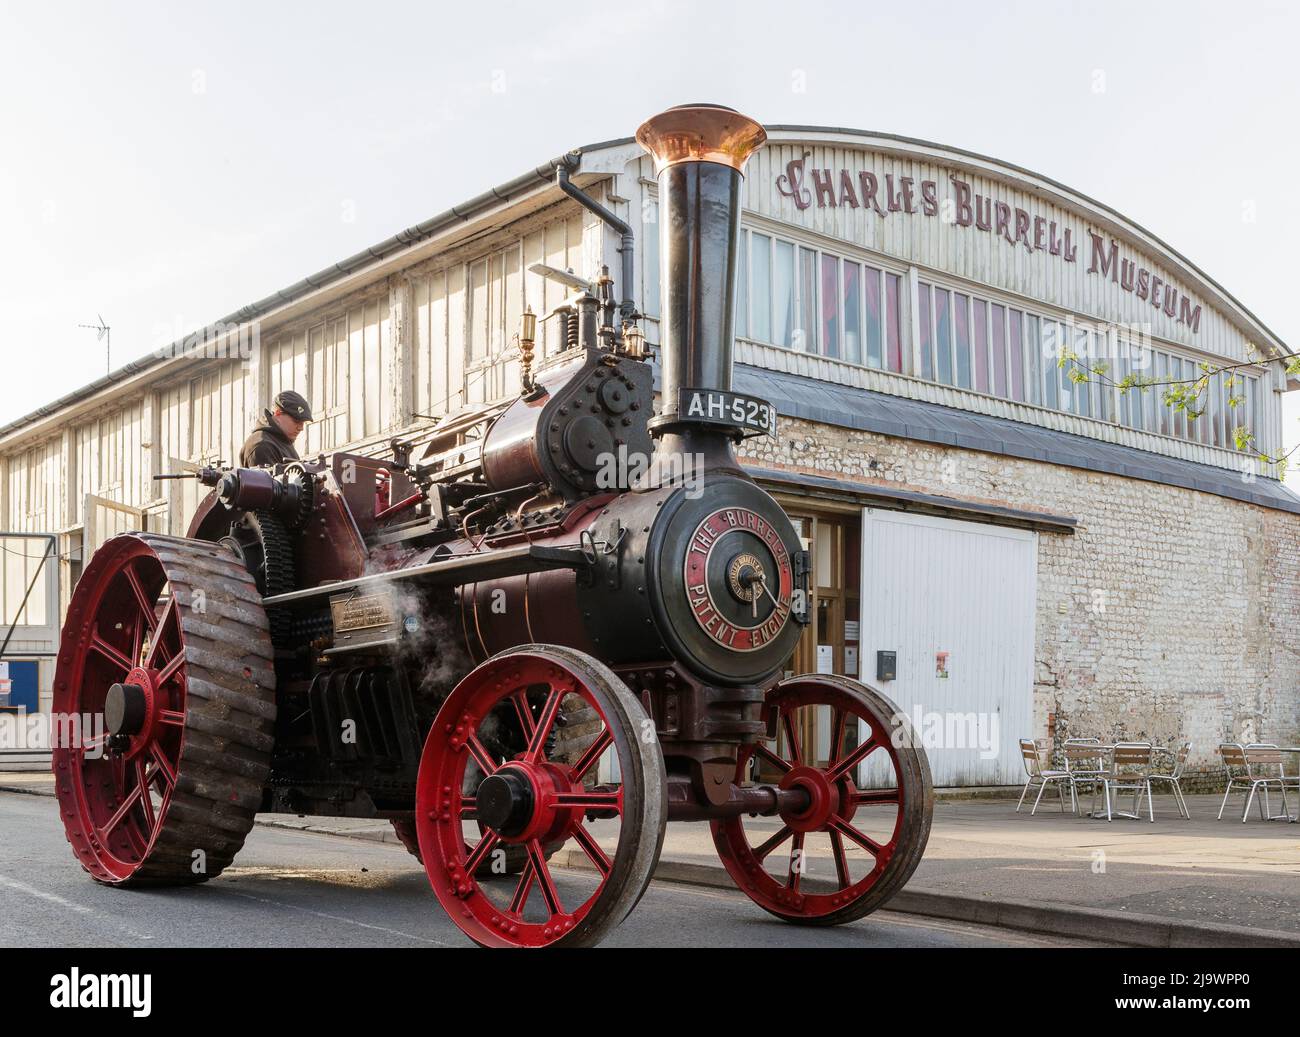 AH5239 le Burrell Patent Steam Engine est stationné à l'extérieur du musée Burrell, l'ancien atelier de peinture de Charles Burrell & Sons, Thetford, Royaume-Uni. Banque D'Images